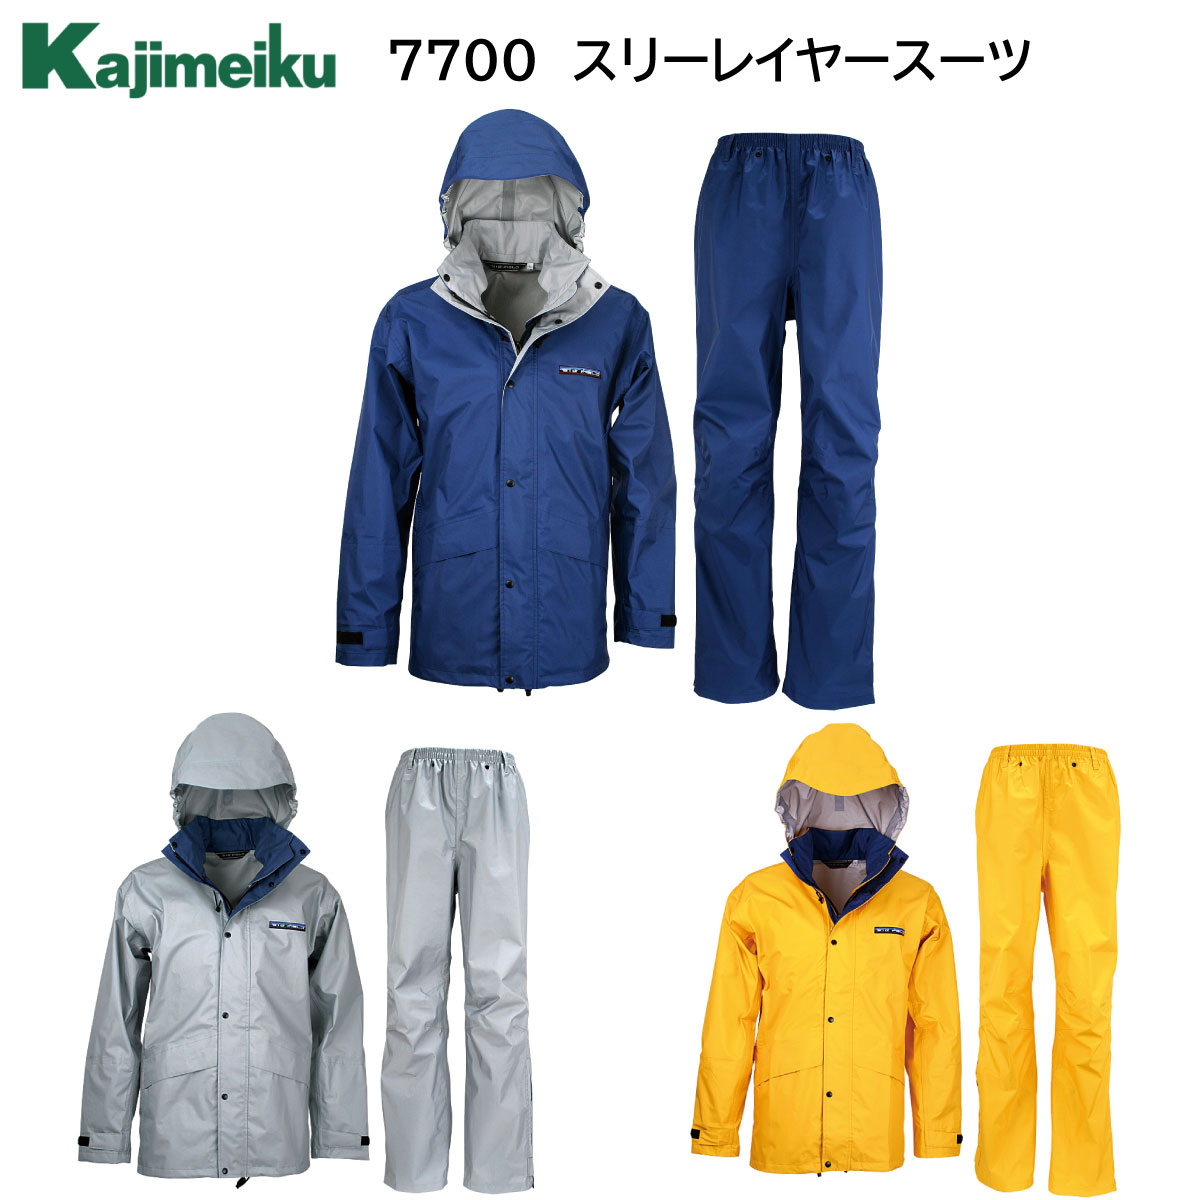 楽天市場】スリーレイヤースーツ 7700 S〜4L カジメイク Kajimeiku 3色